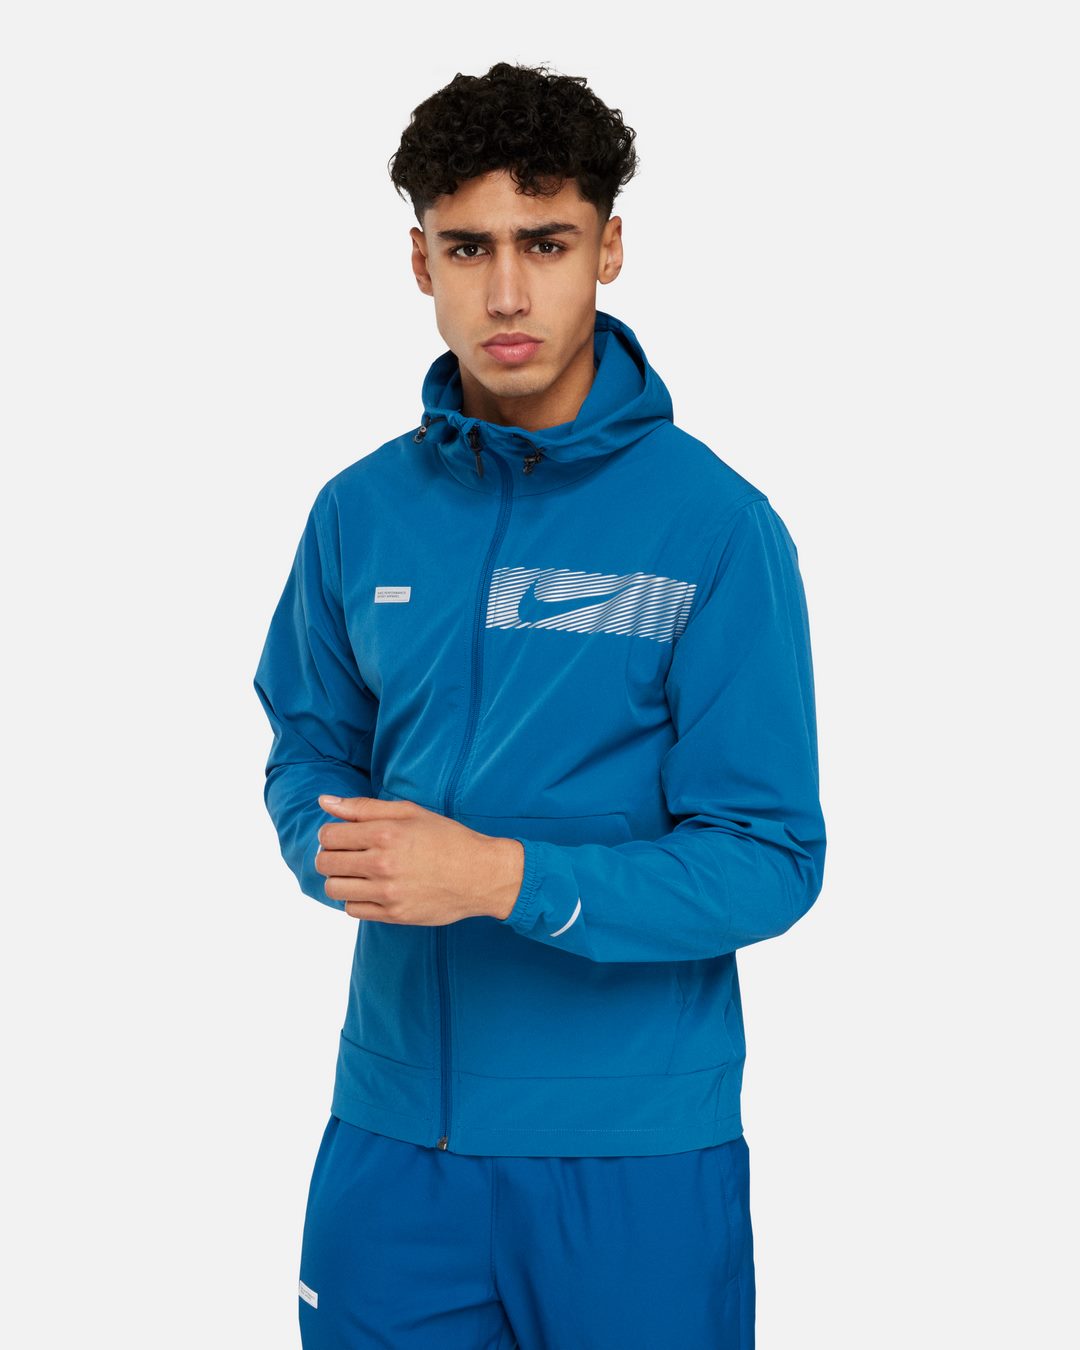 Nike Unlimited Jacket - Blue